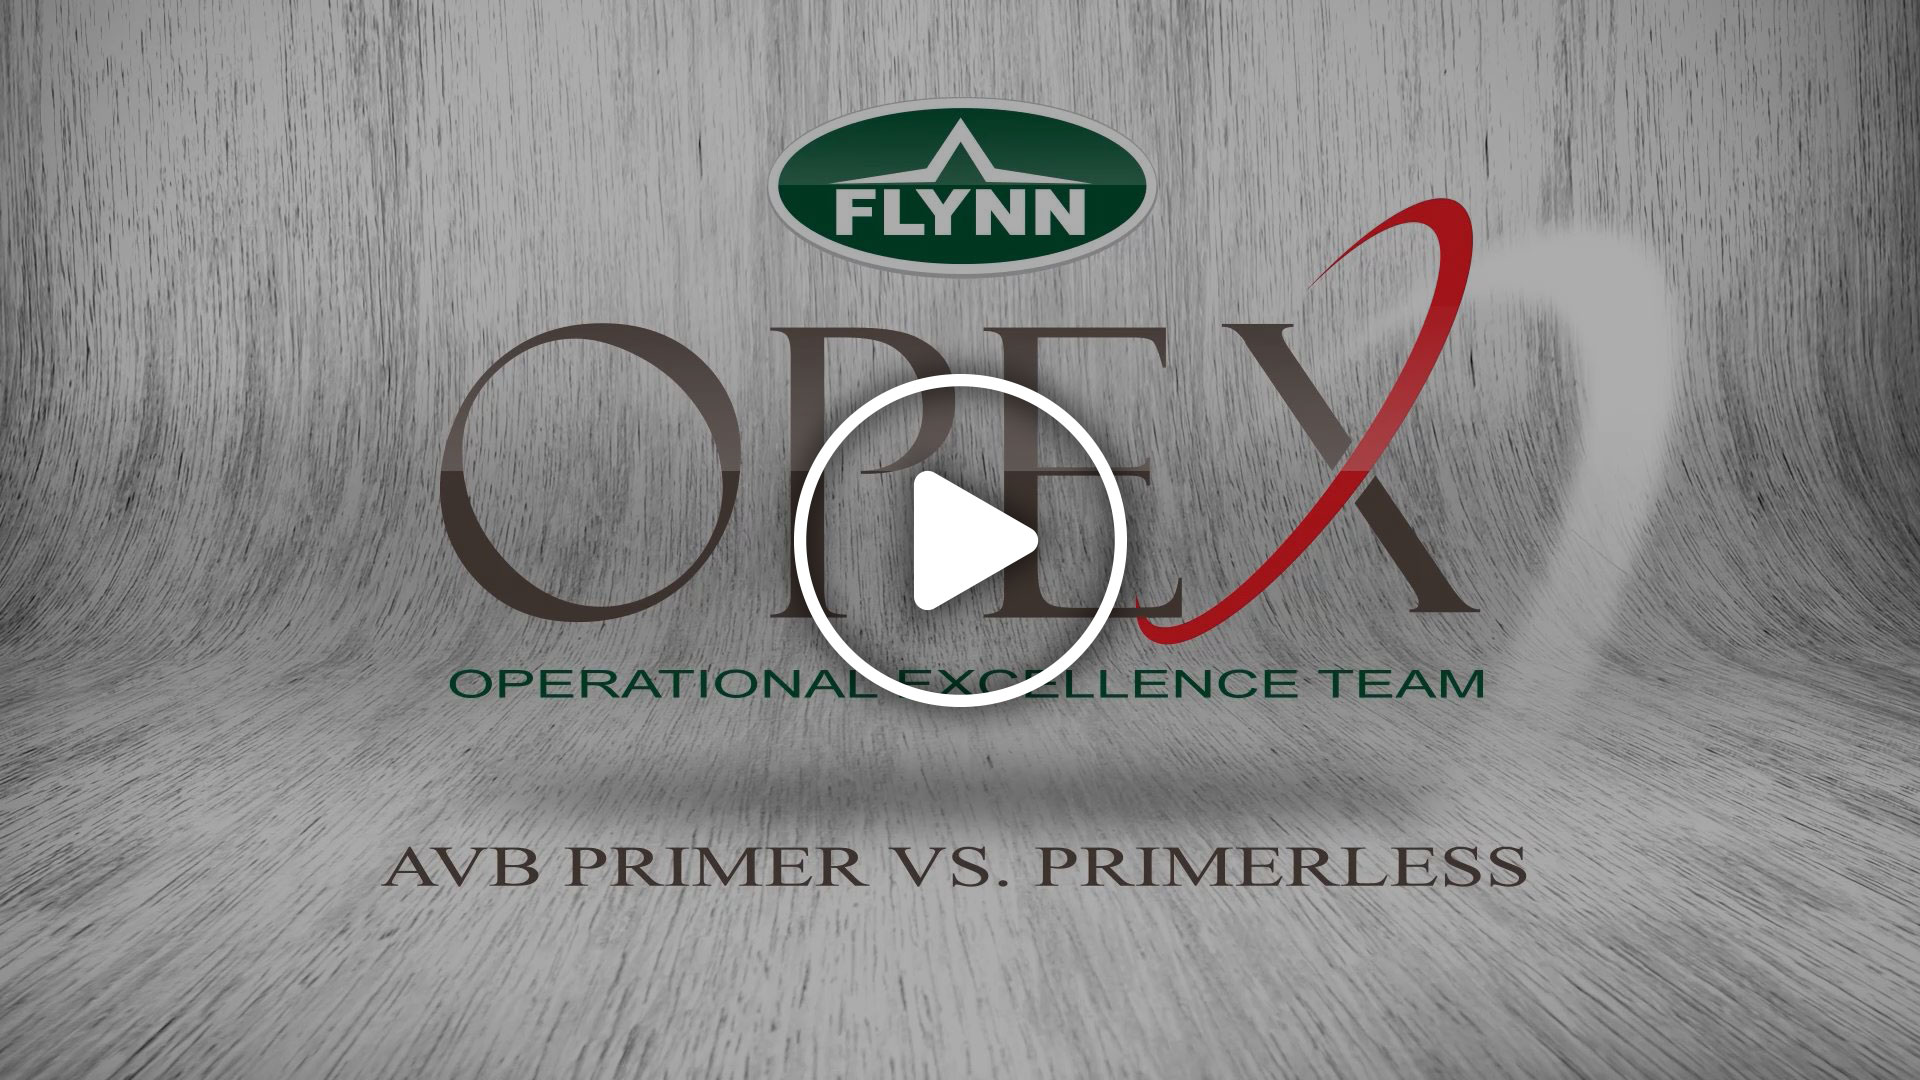 AVB - Primerless vs Primer